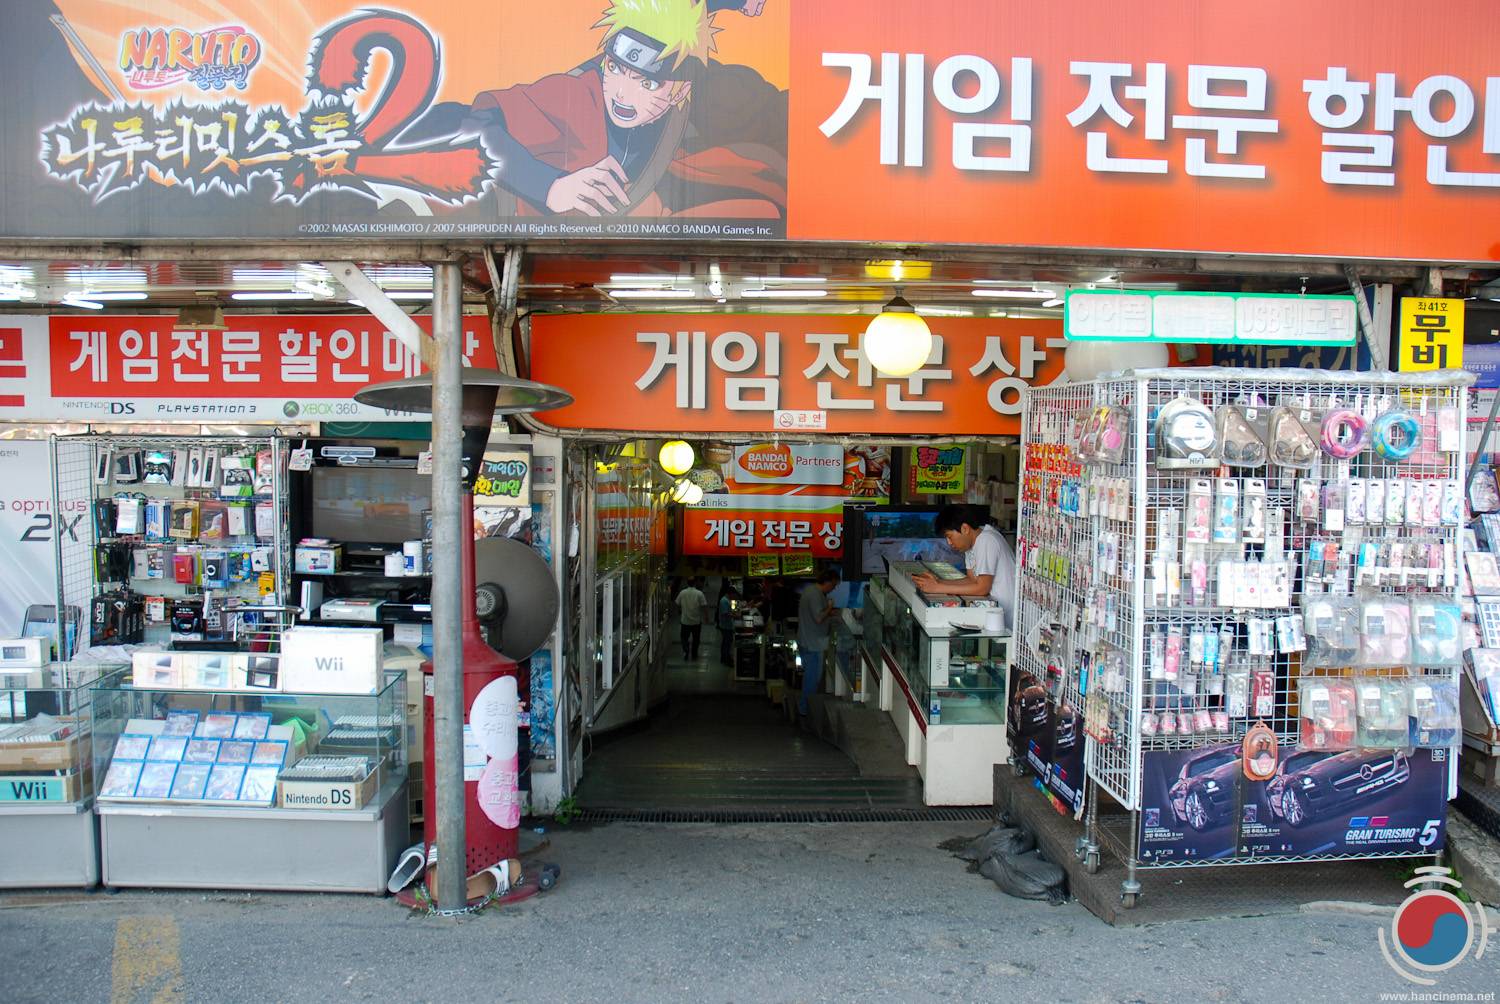 nintendo store in korea